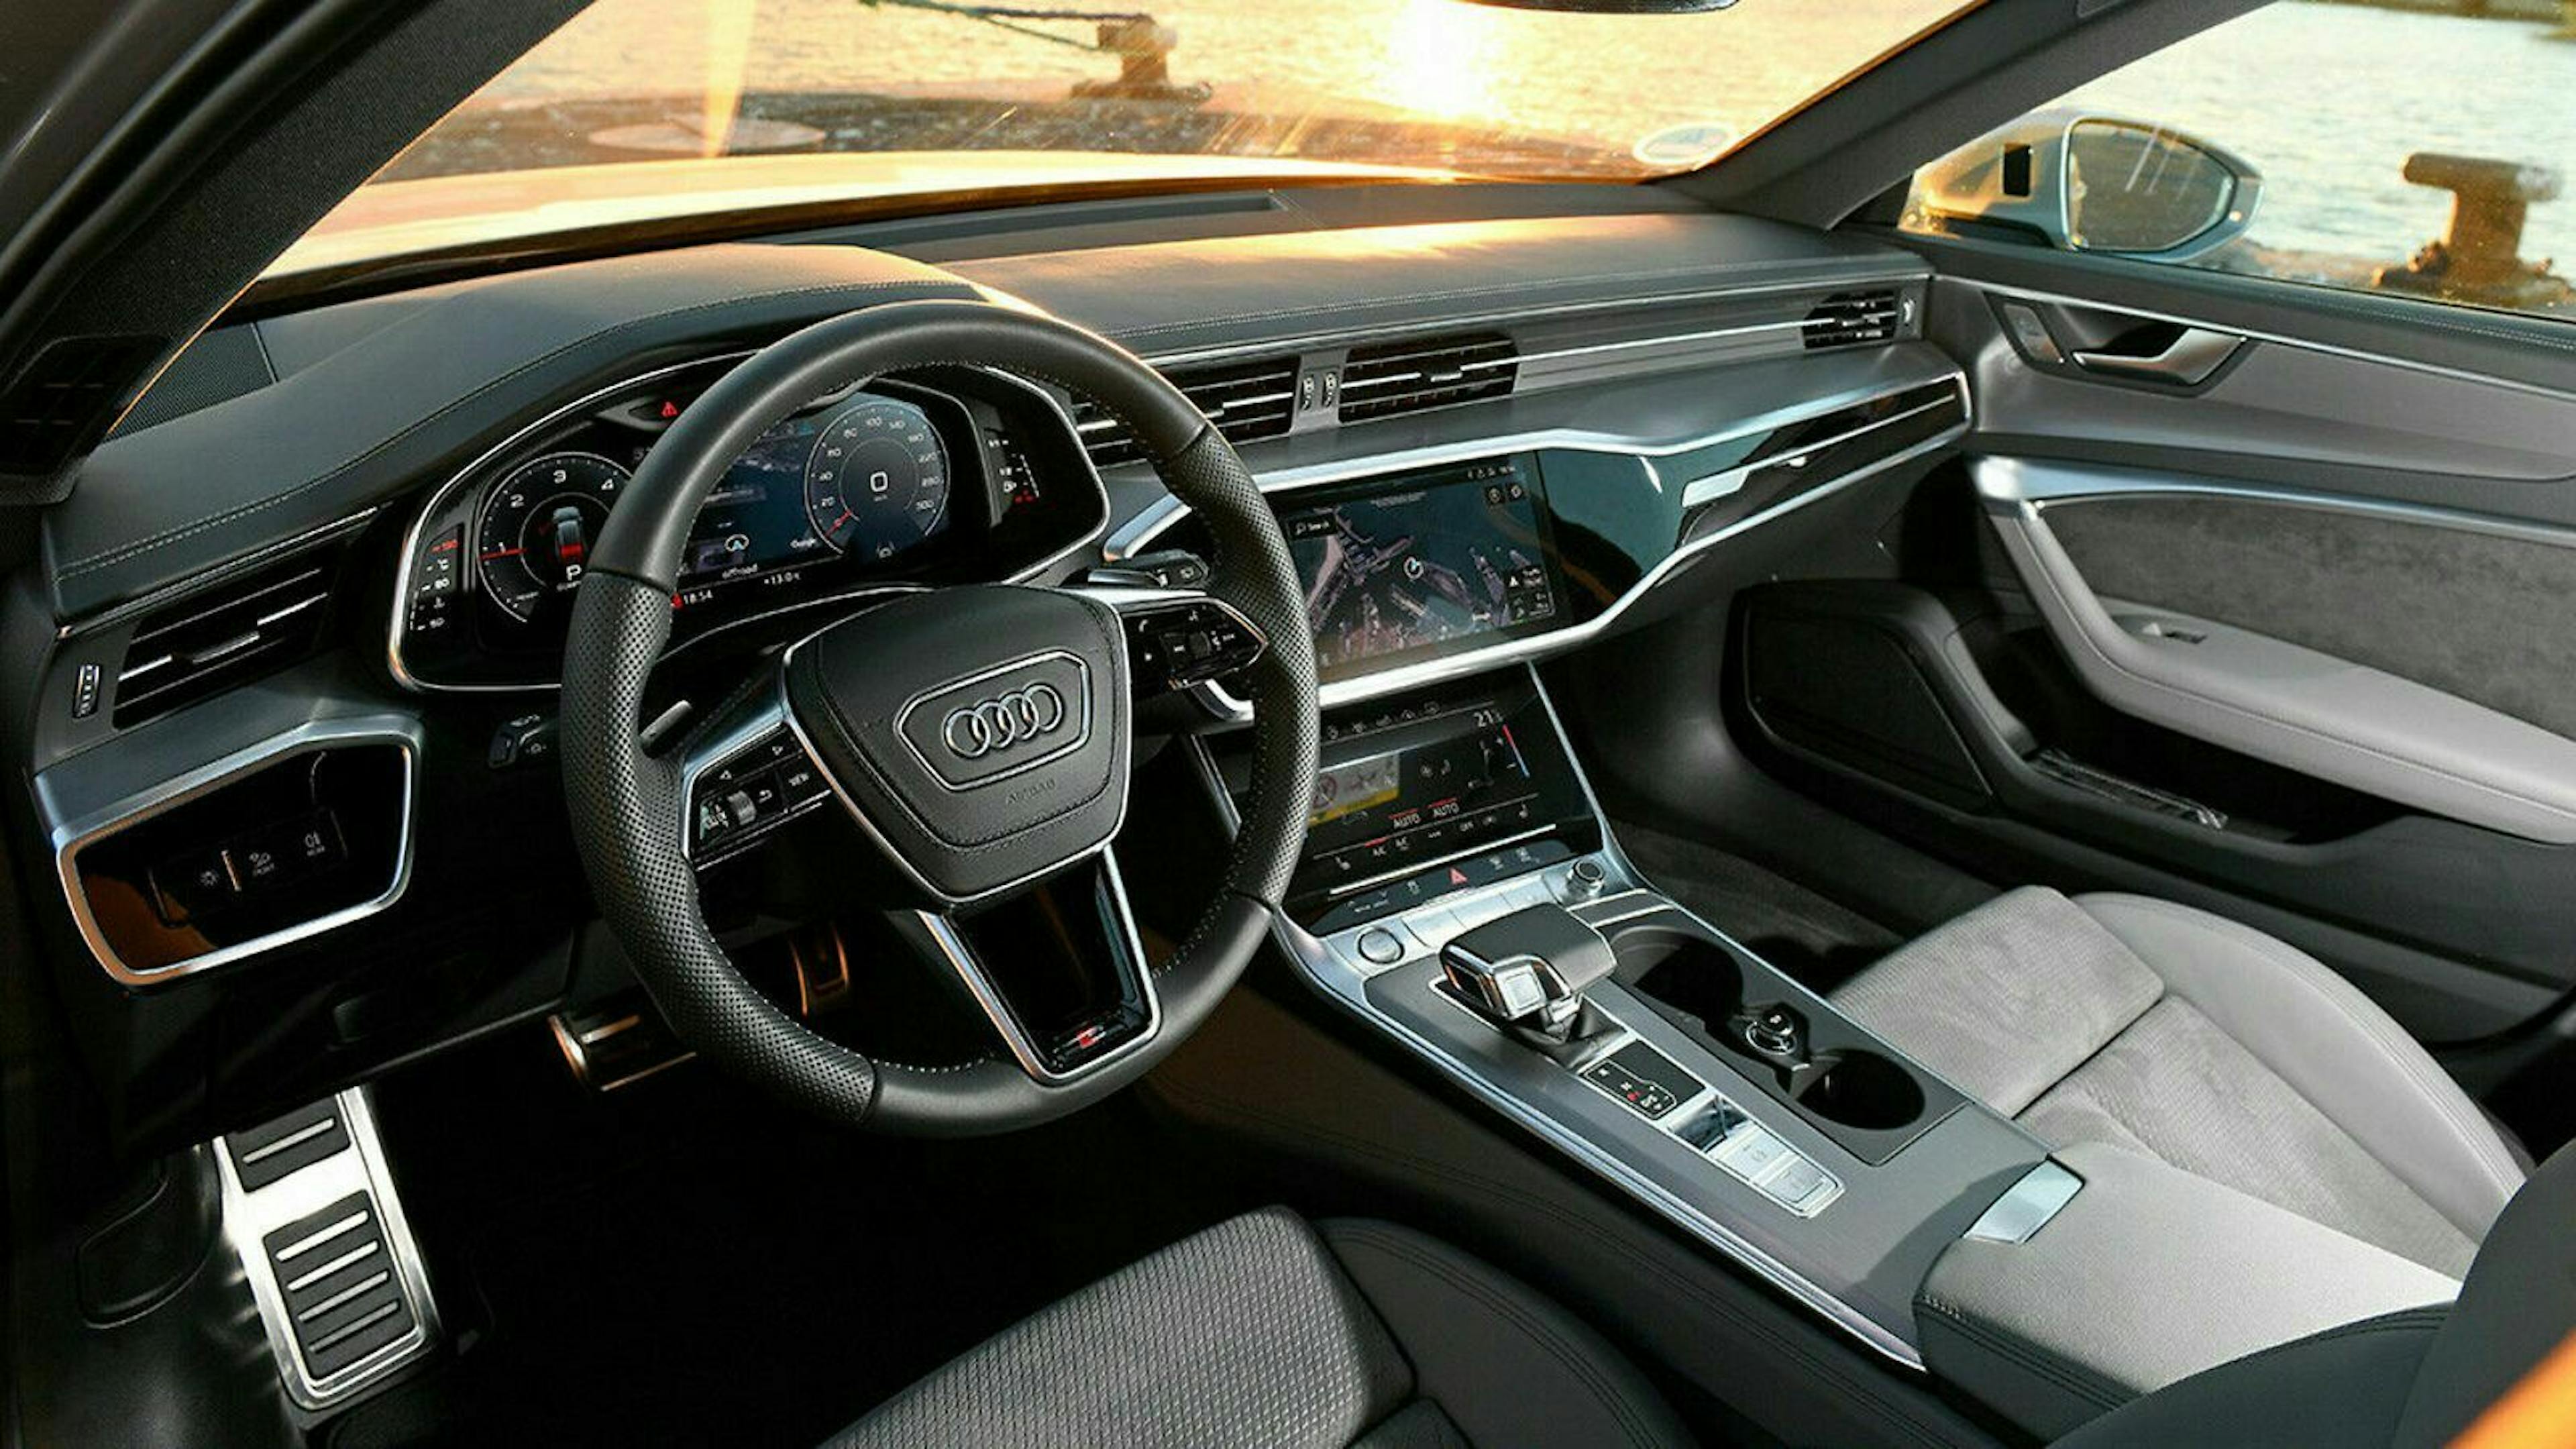 Um den Audi A6 zu bedienen, stehen zwei Touchbildschirme zur Verfügung.